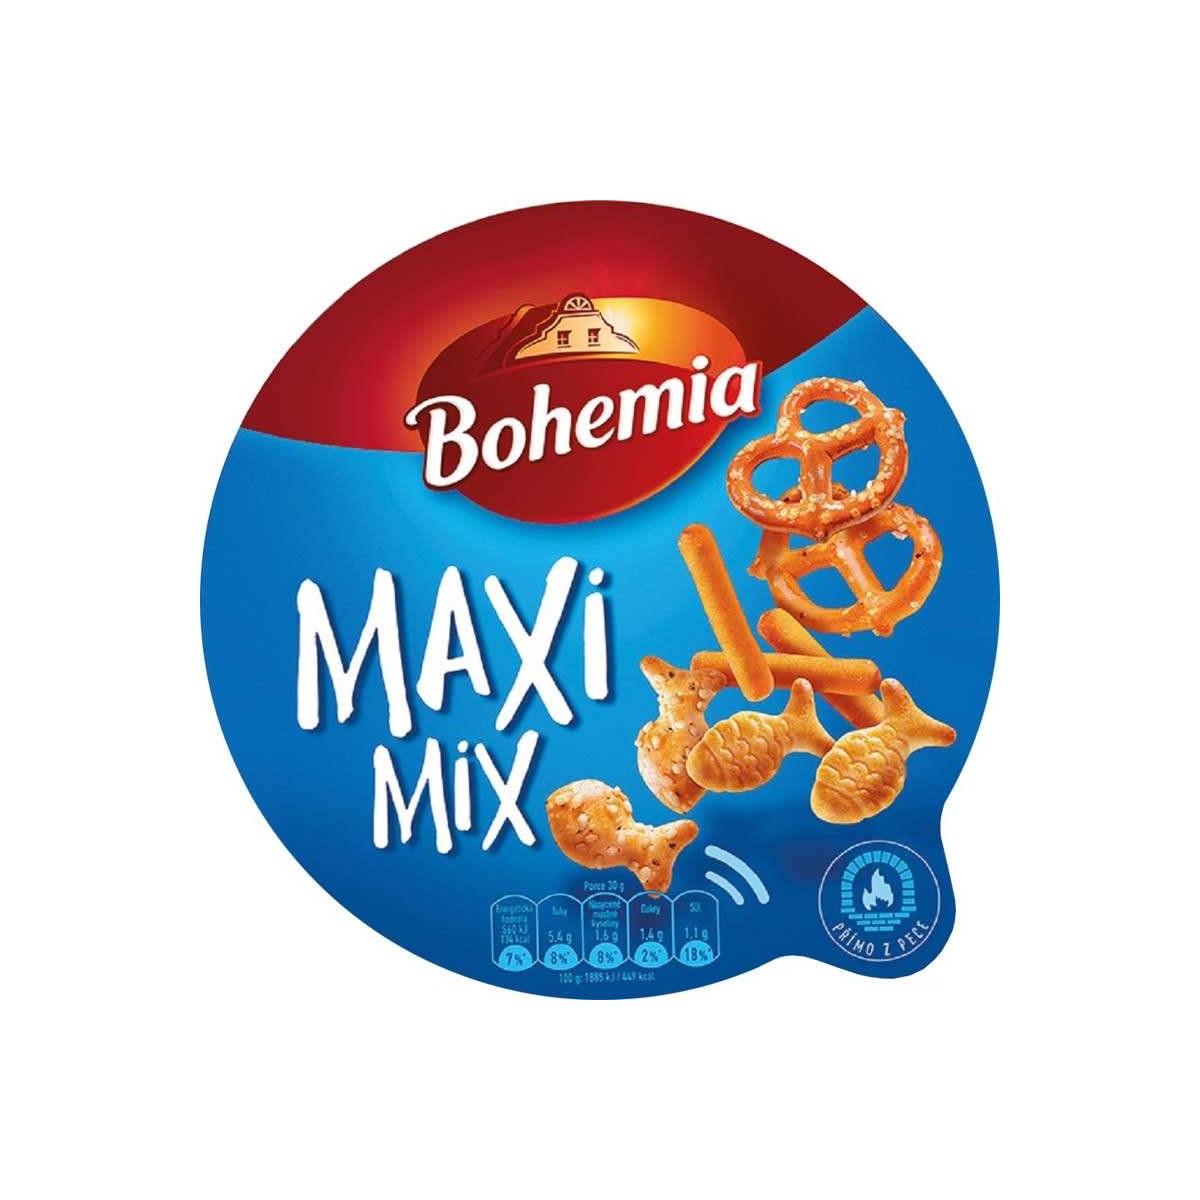 Bohemia maxi mix 100g